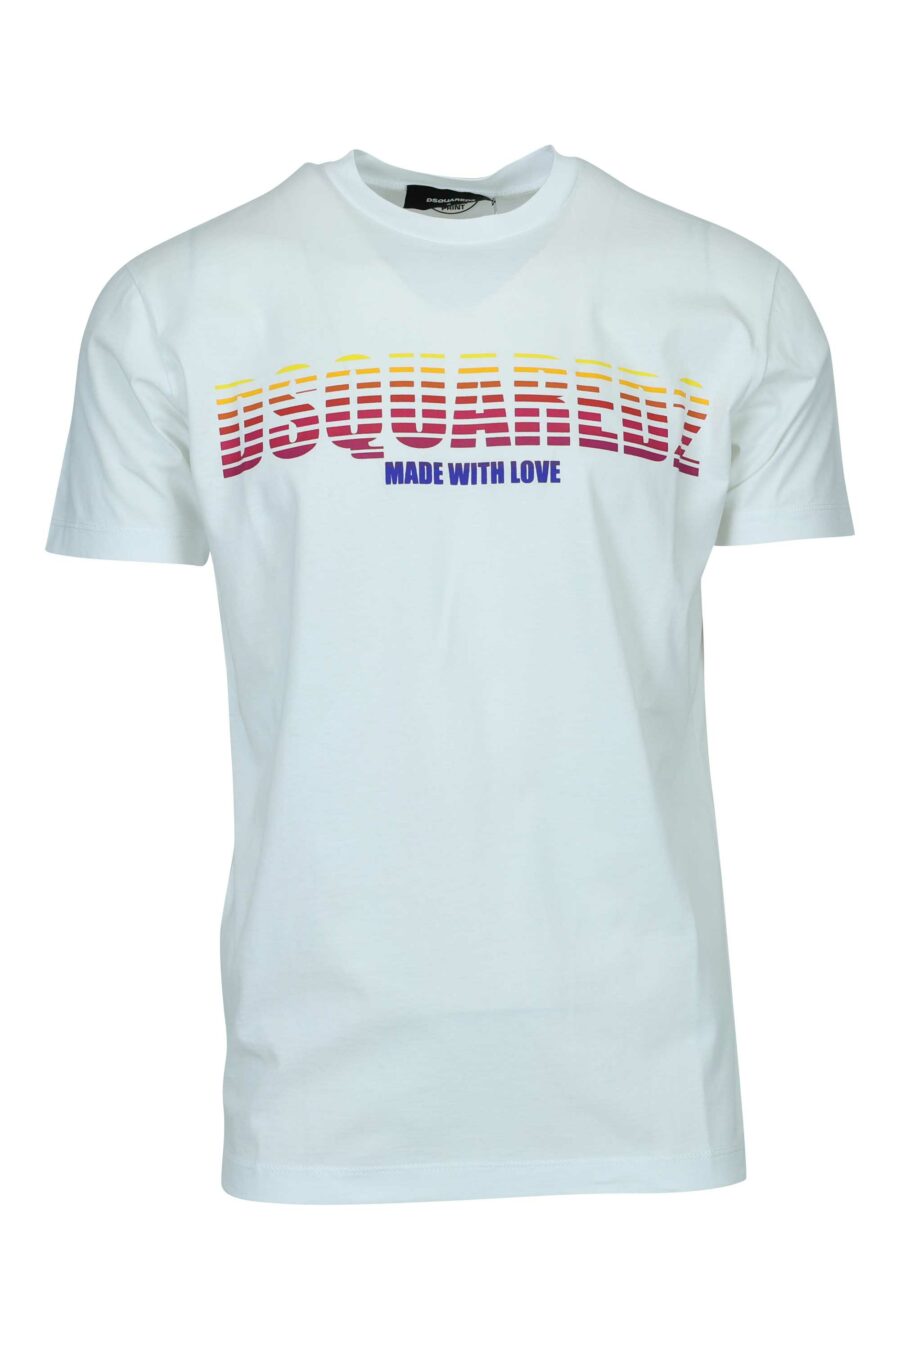 T-shirt blanc avec maxilogo rétro multicolore - 8054148447434 2